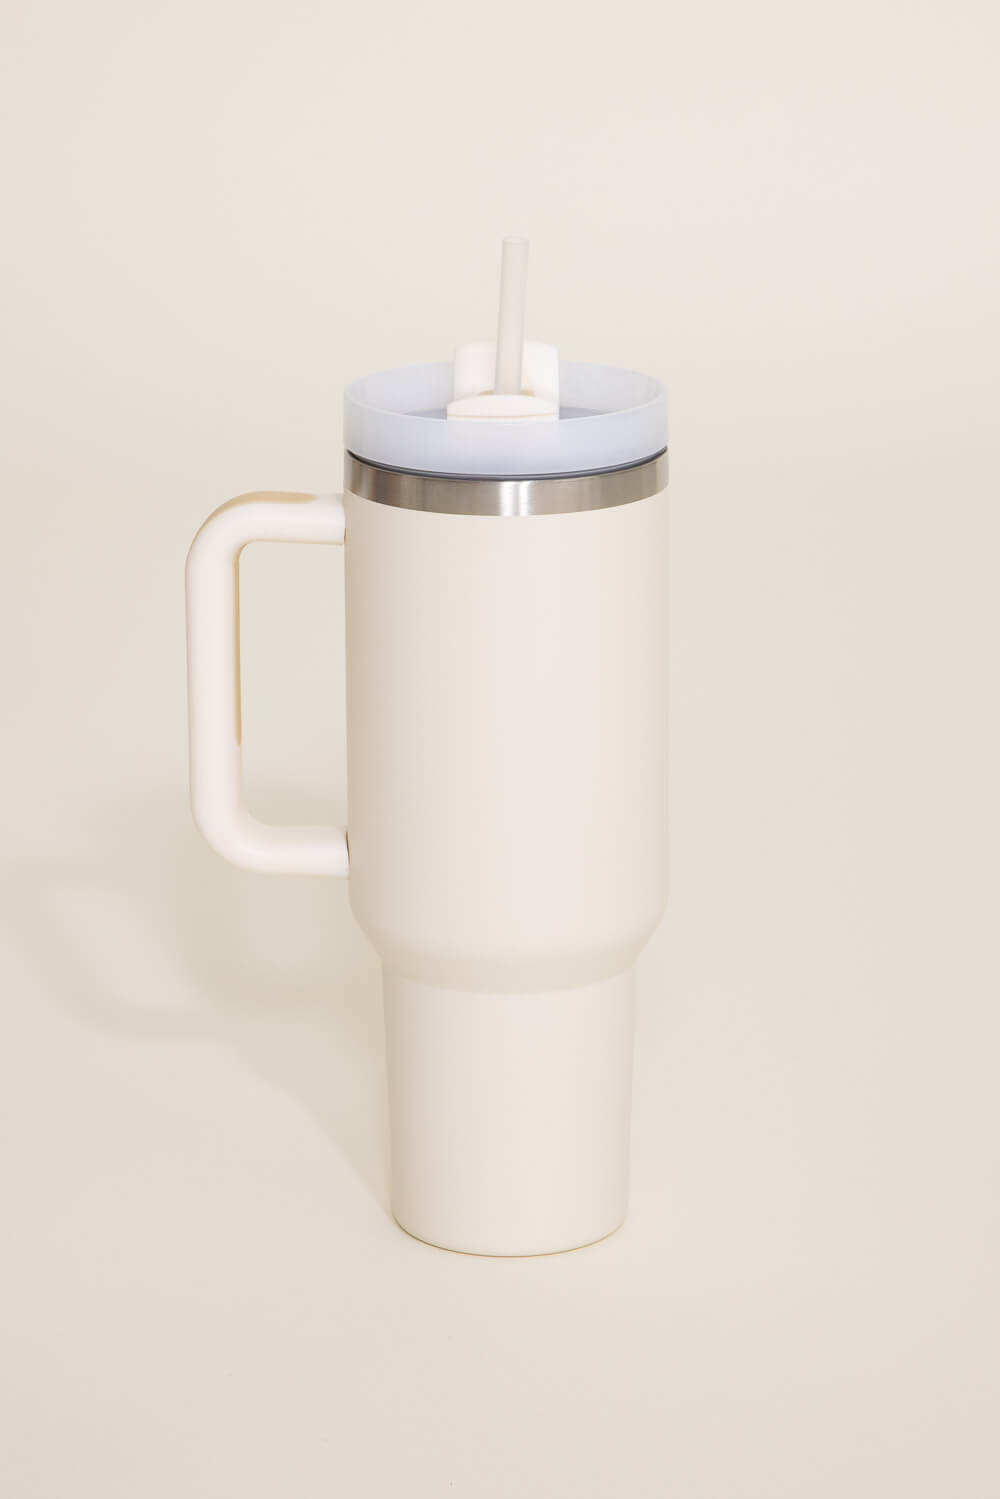 Stanley 40oz Handled Mug Travel Mug With Handle 